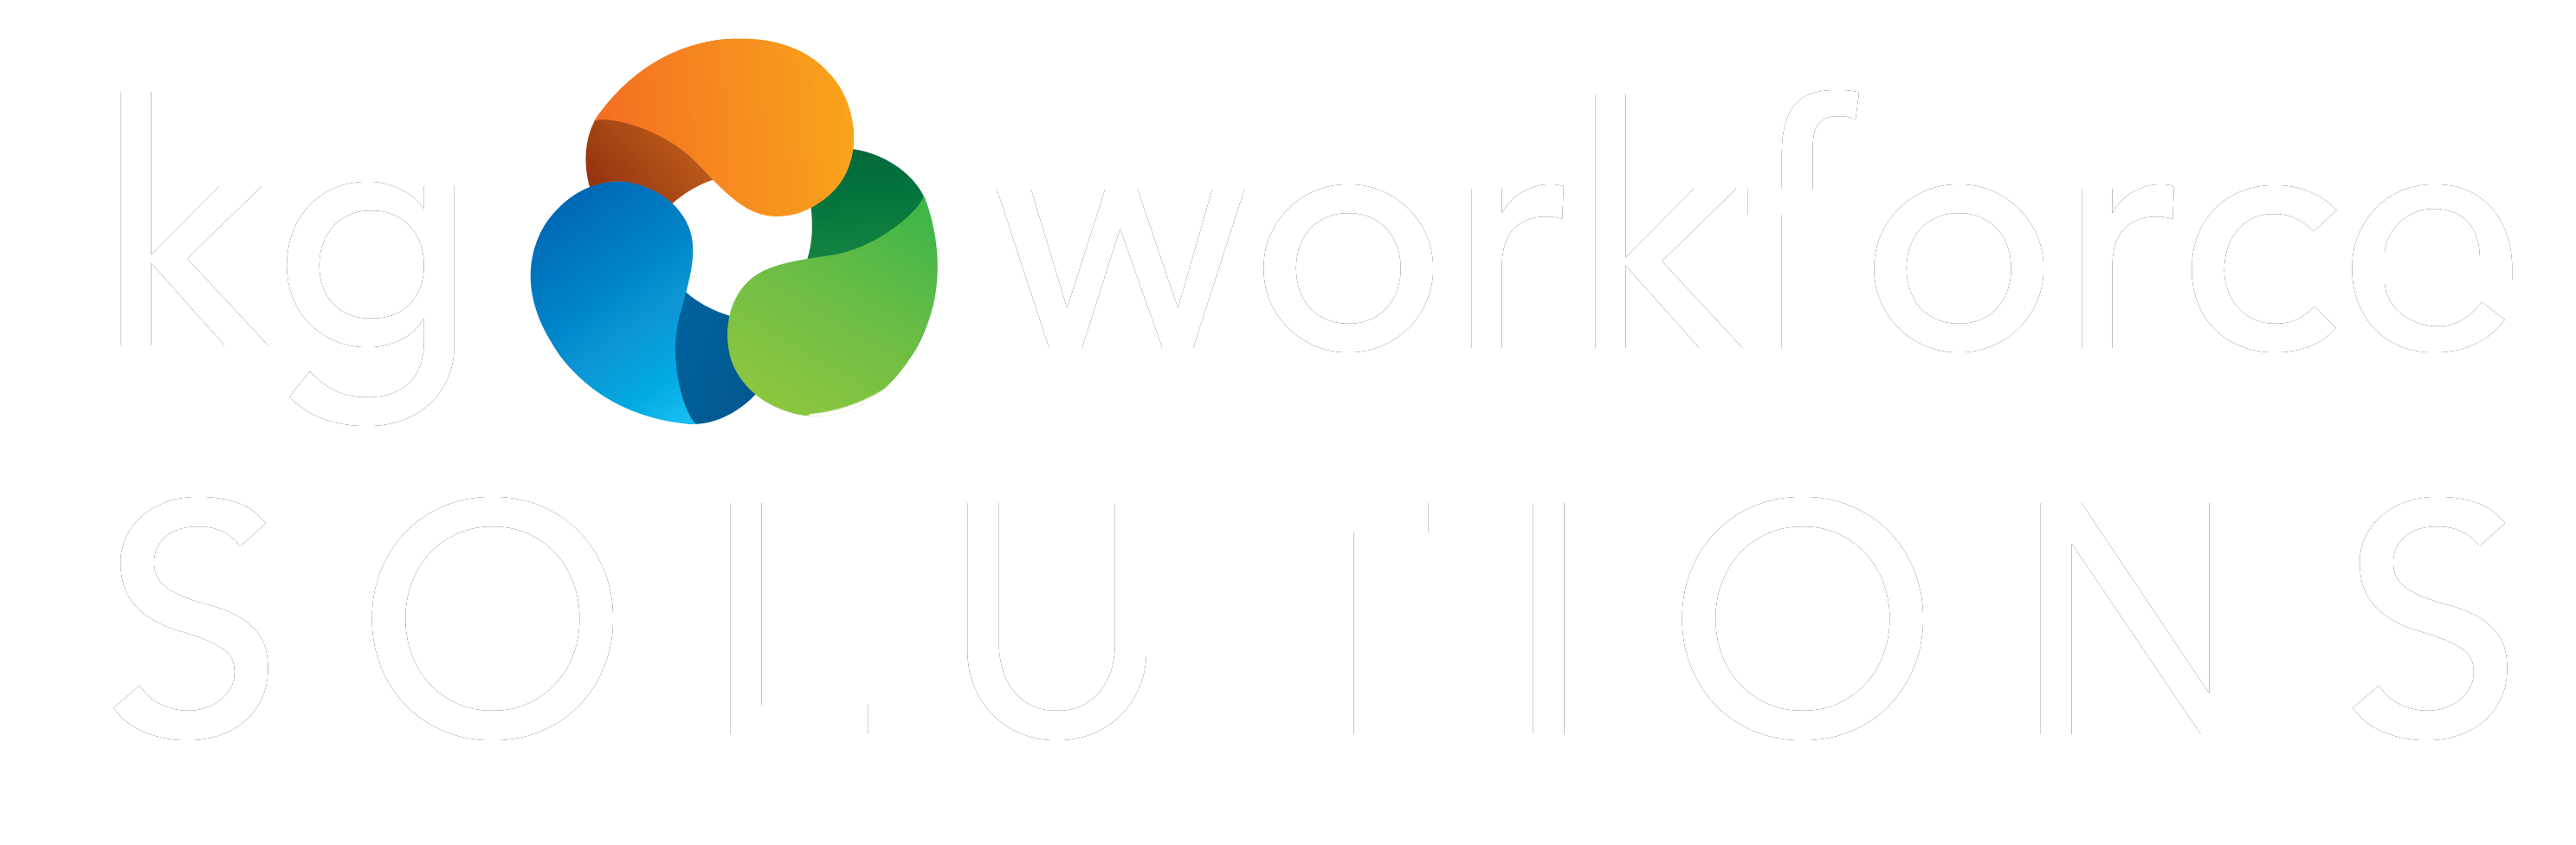 KG Workforce Solutions